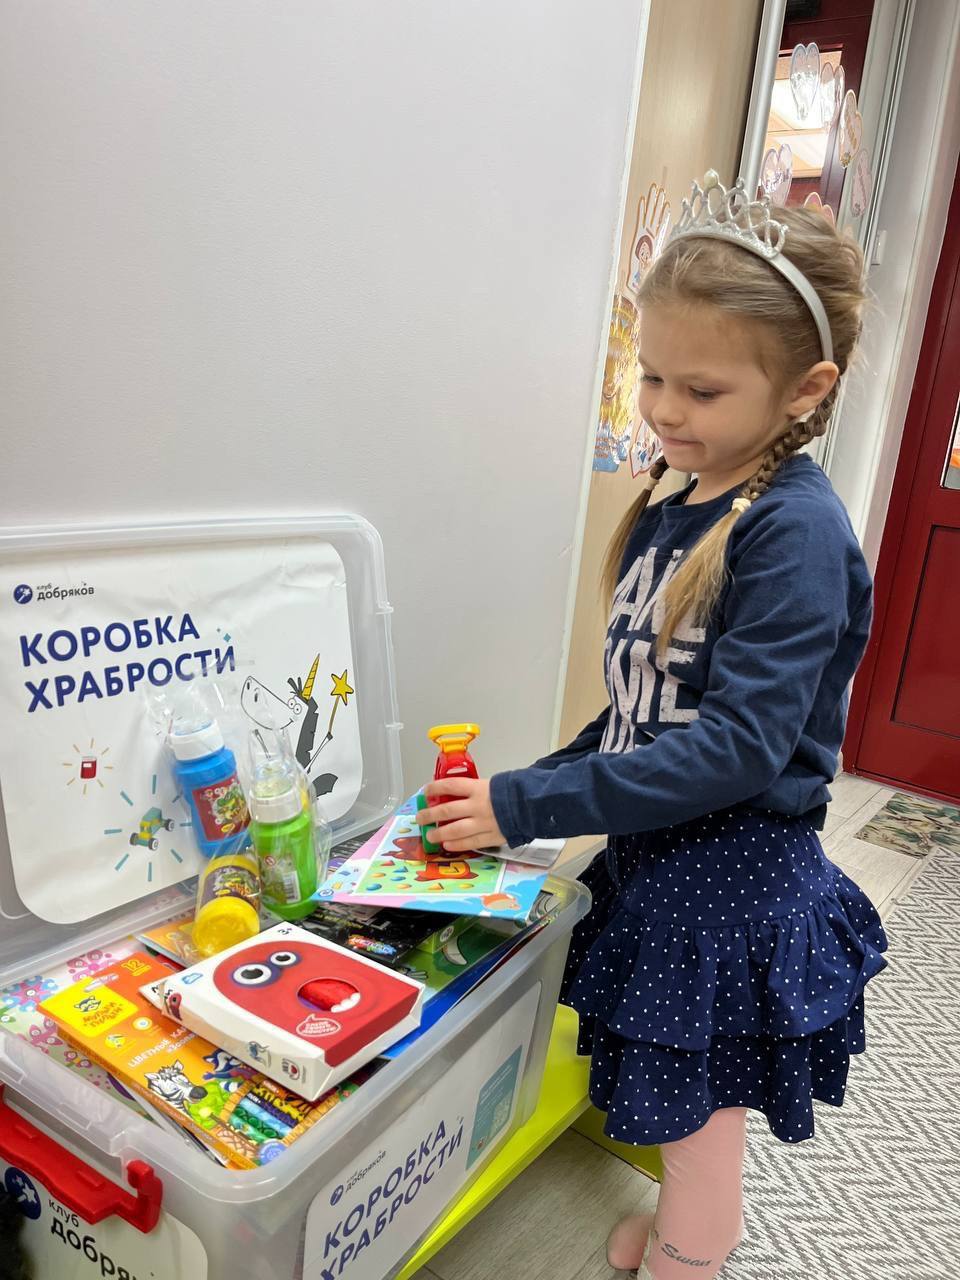 Дошкольники из Подмосковья собрали три коробки храбрости для детской больницы